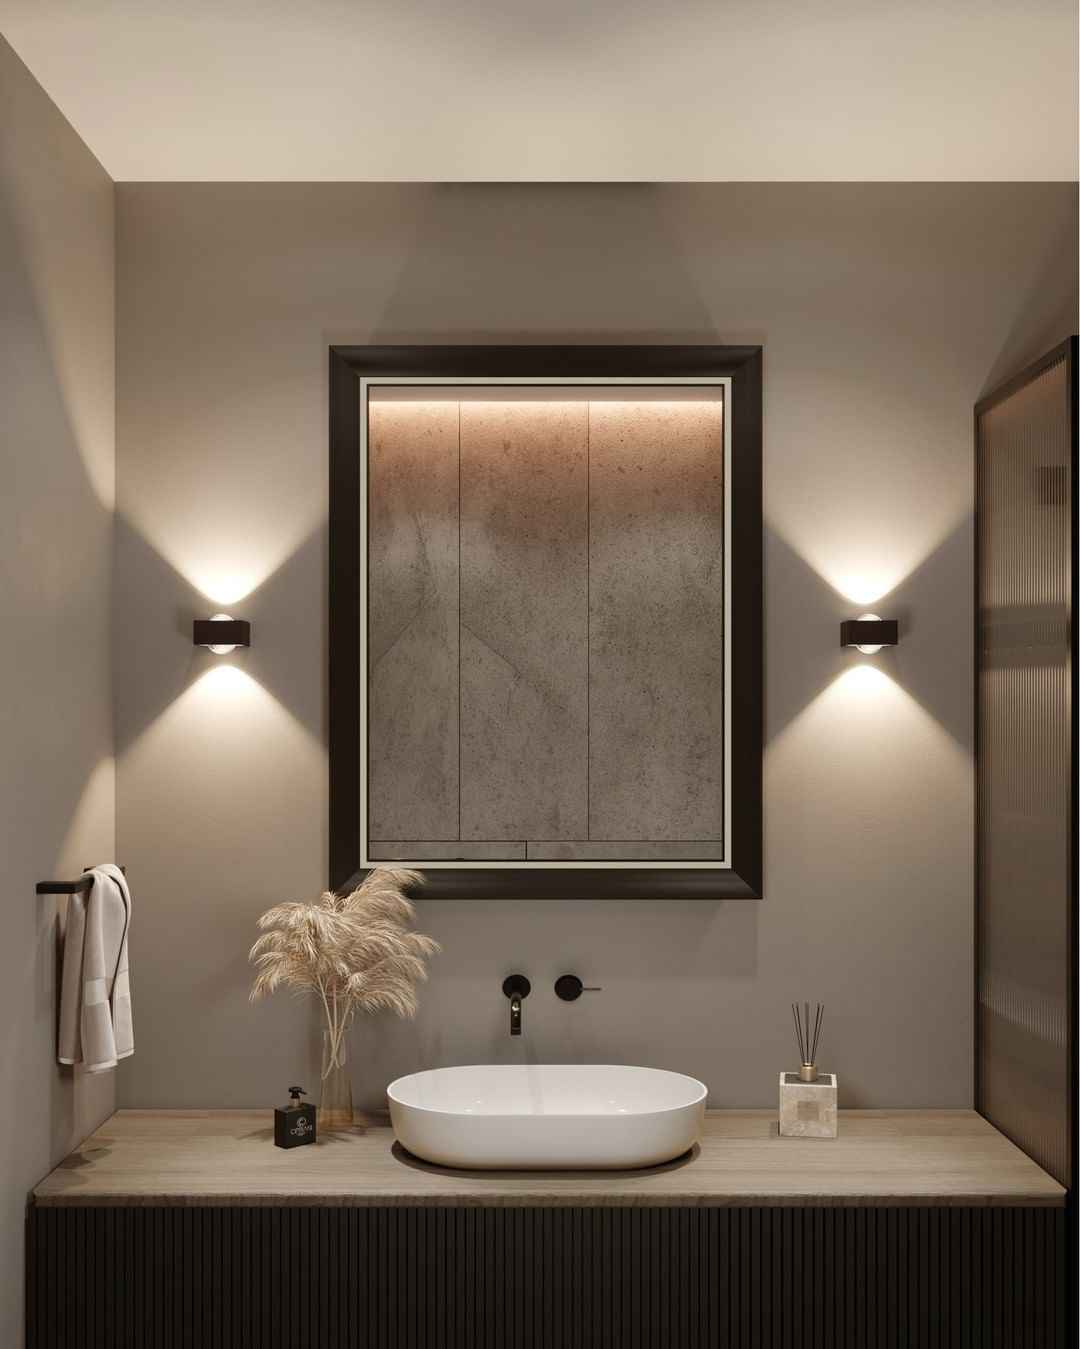 Eine Badezimmer-Szenerie mit verschiedenen Top Light Leuchten und Lichtspiegeln